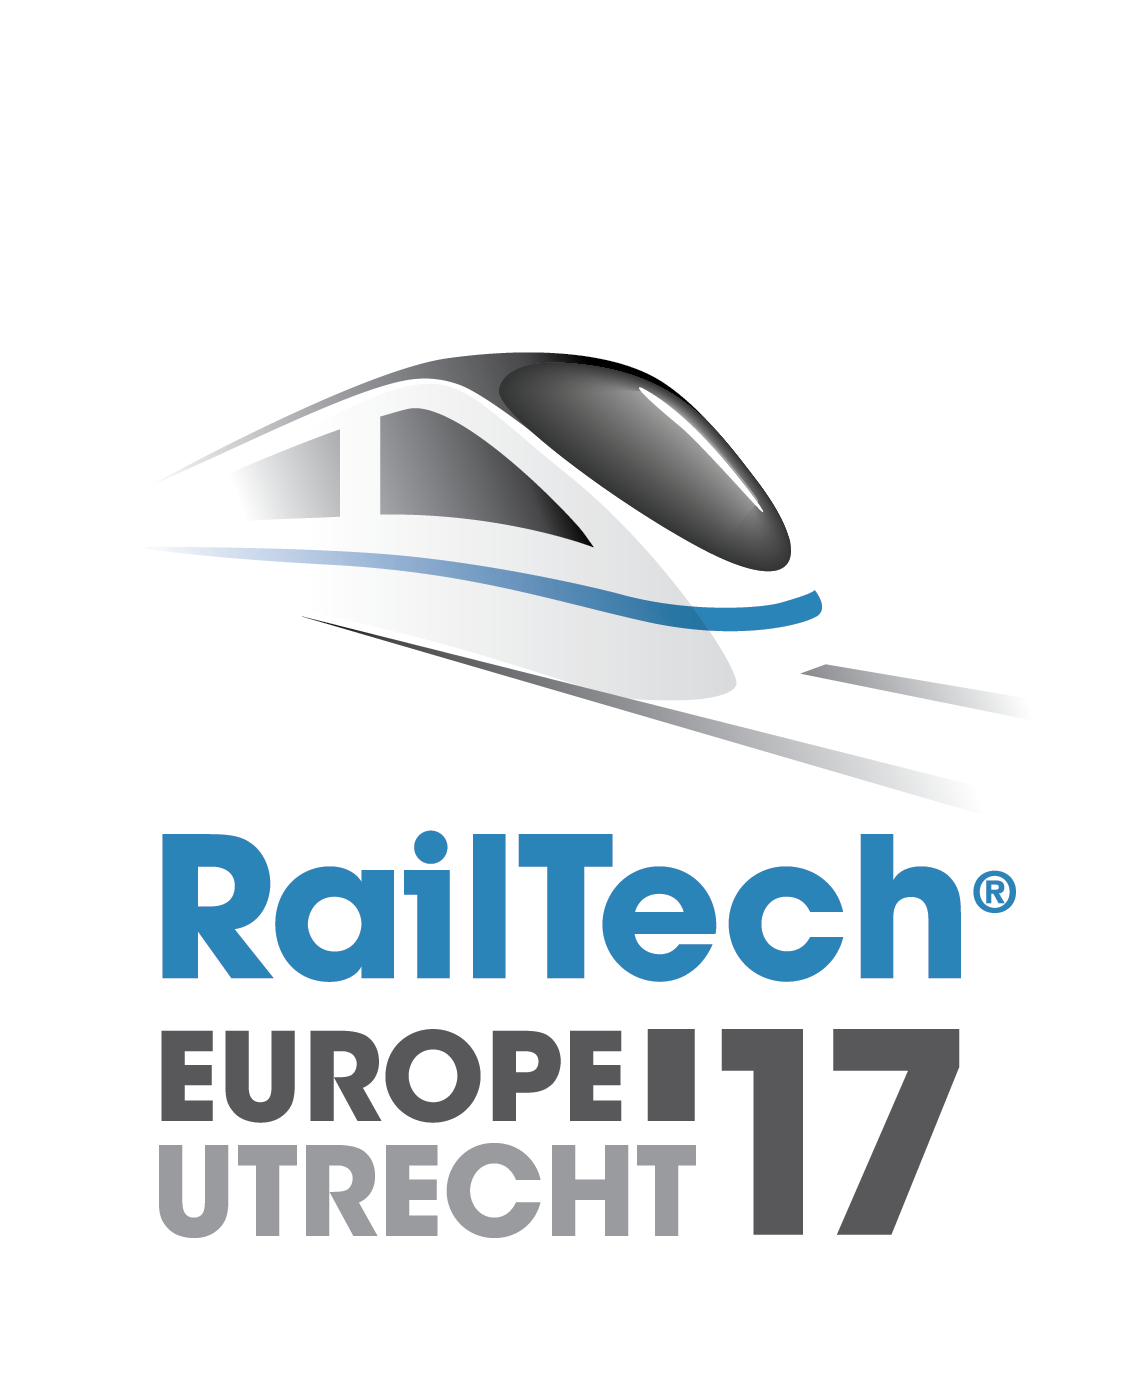 Logo-Railtech-Europe-Utrecht-2017